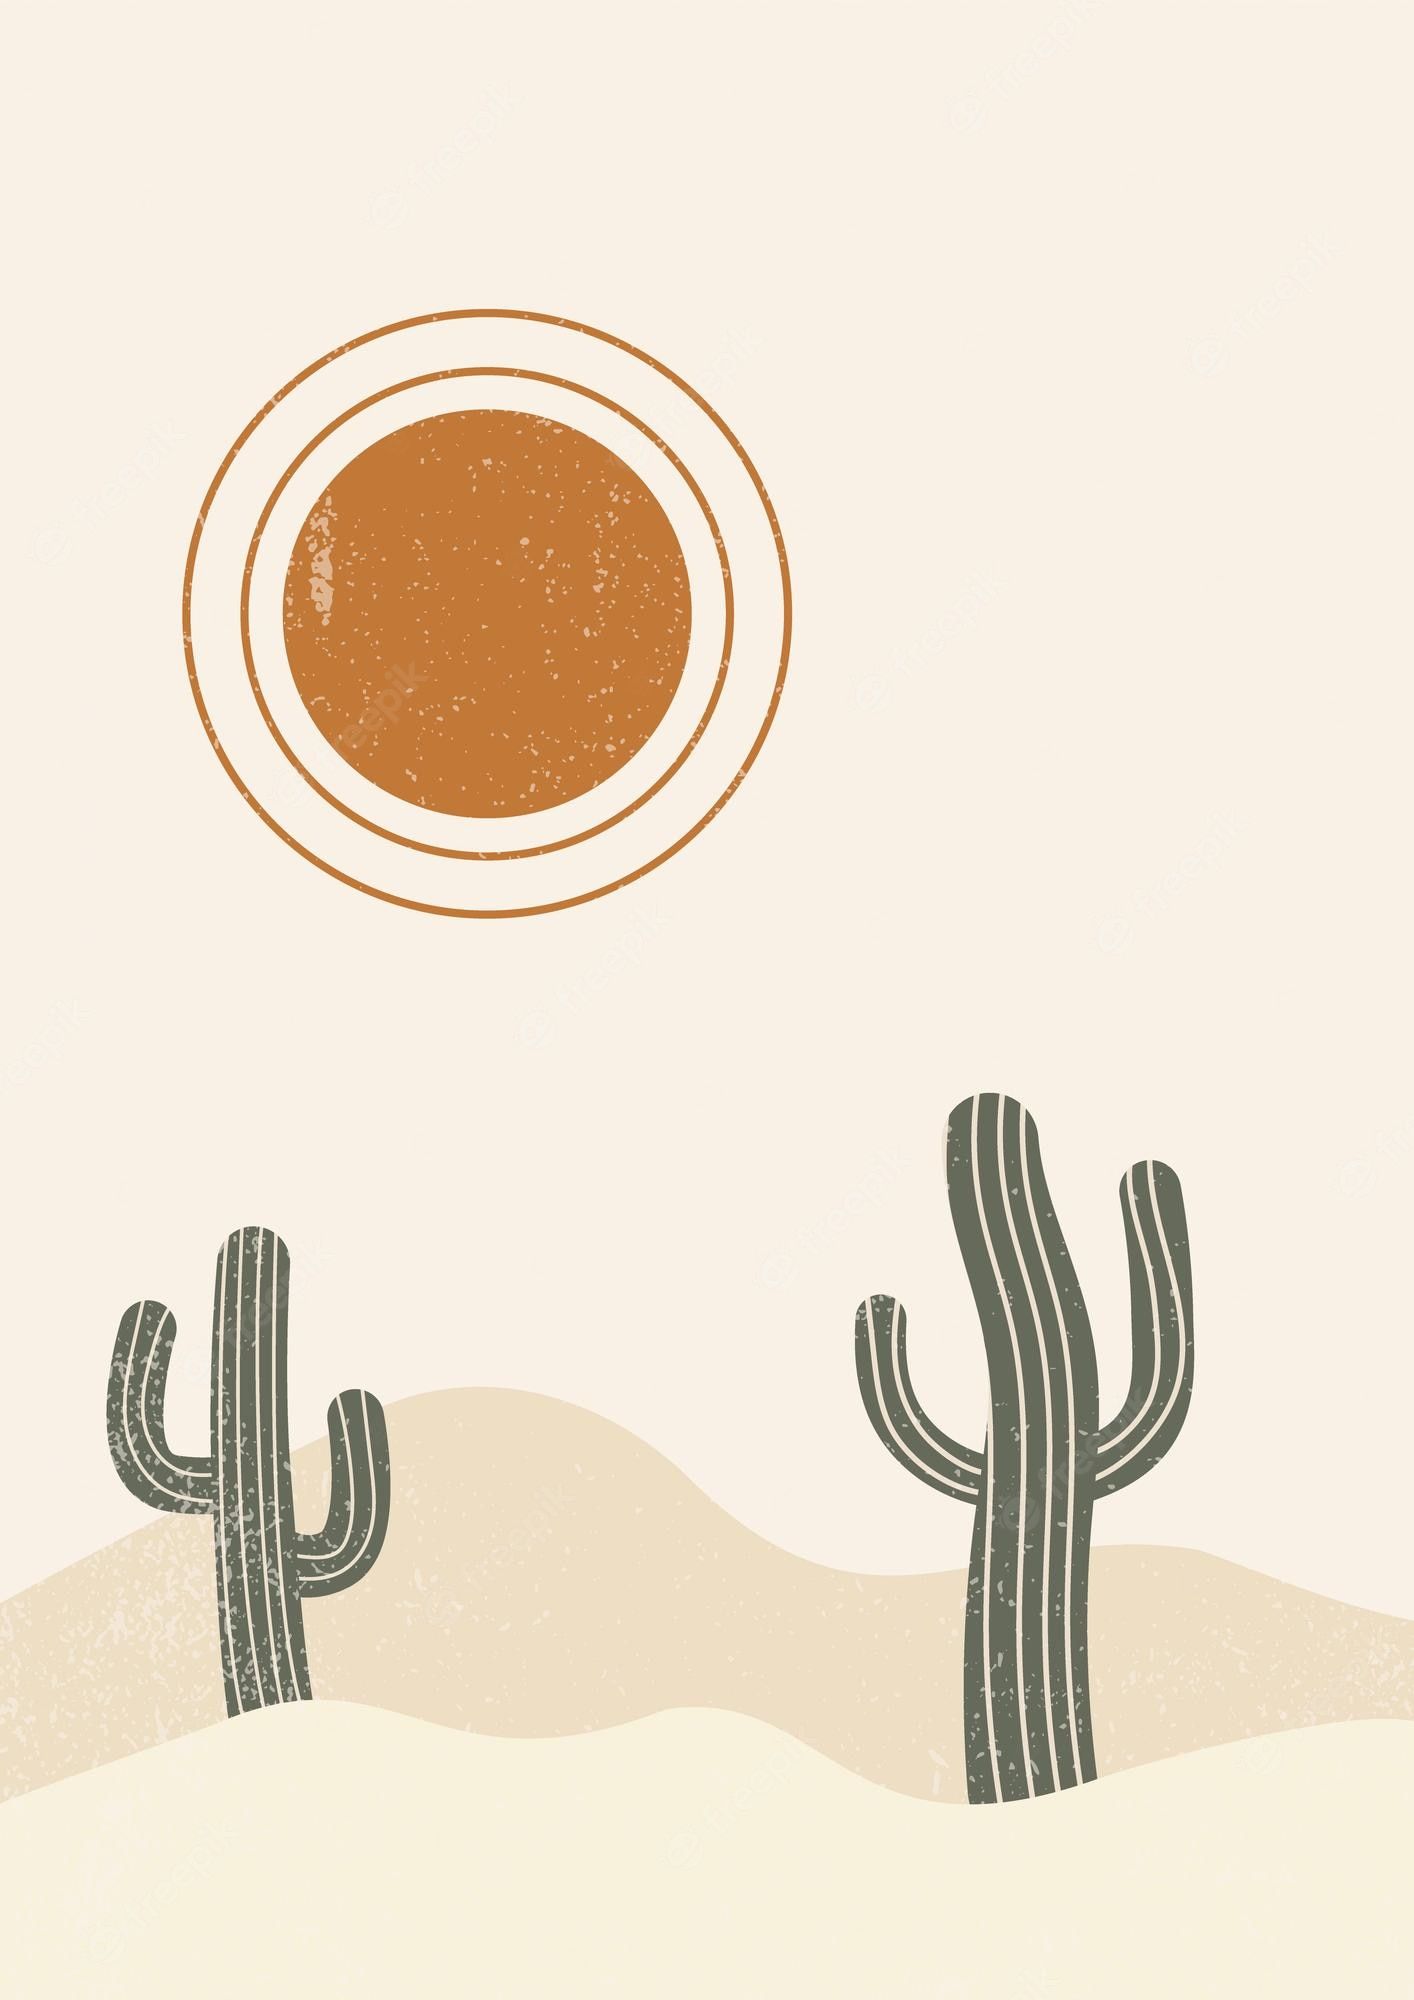 Cactus Background Image